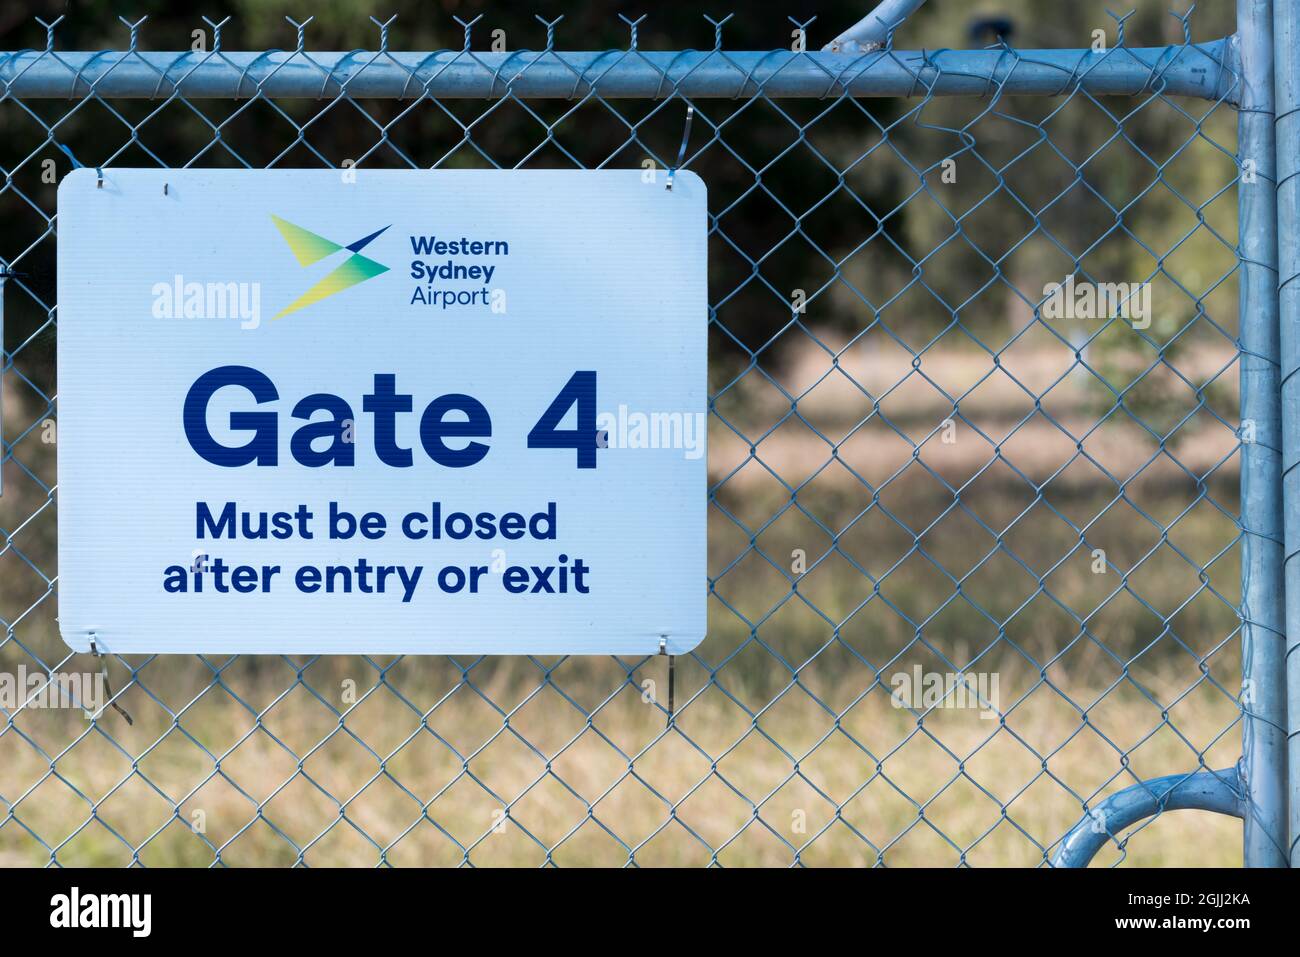 Una señal de advertencia e identificación en una de las puertas que rodean el nuevo aeropuerto internacional Western Sydney (Nancy Bird Walton) que abrirá en 2026 Foto de stock